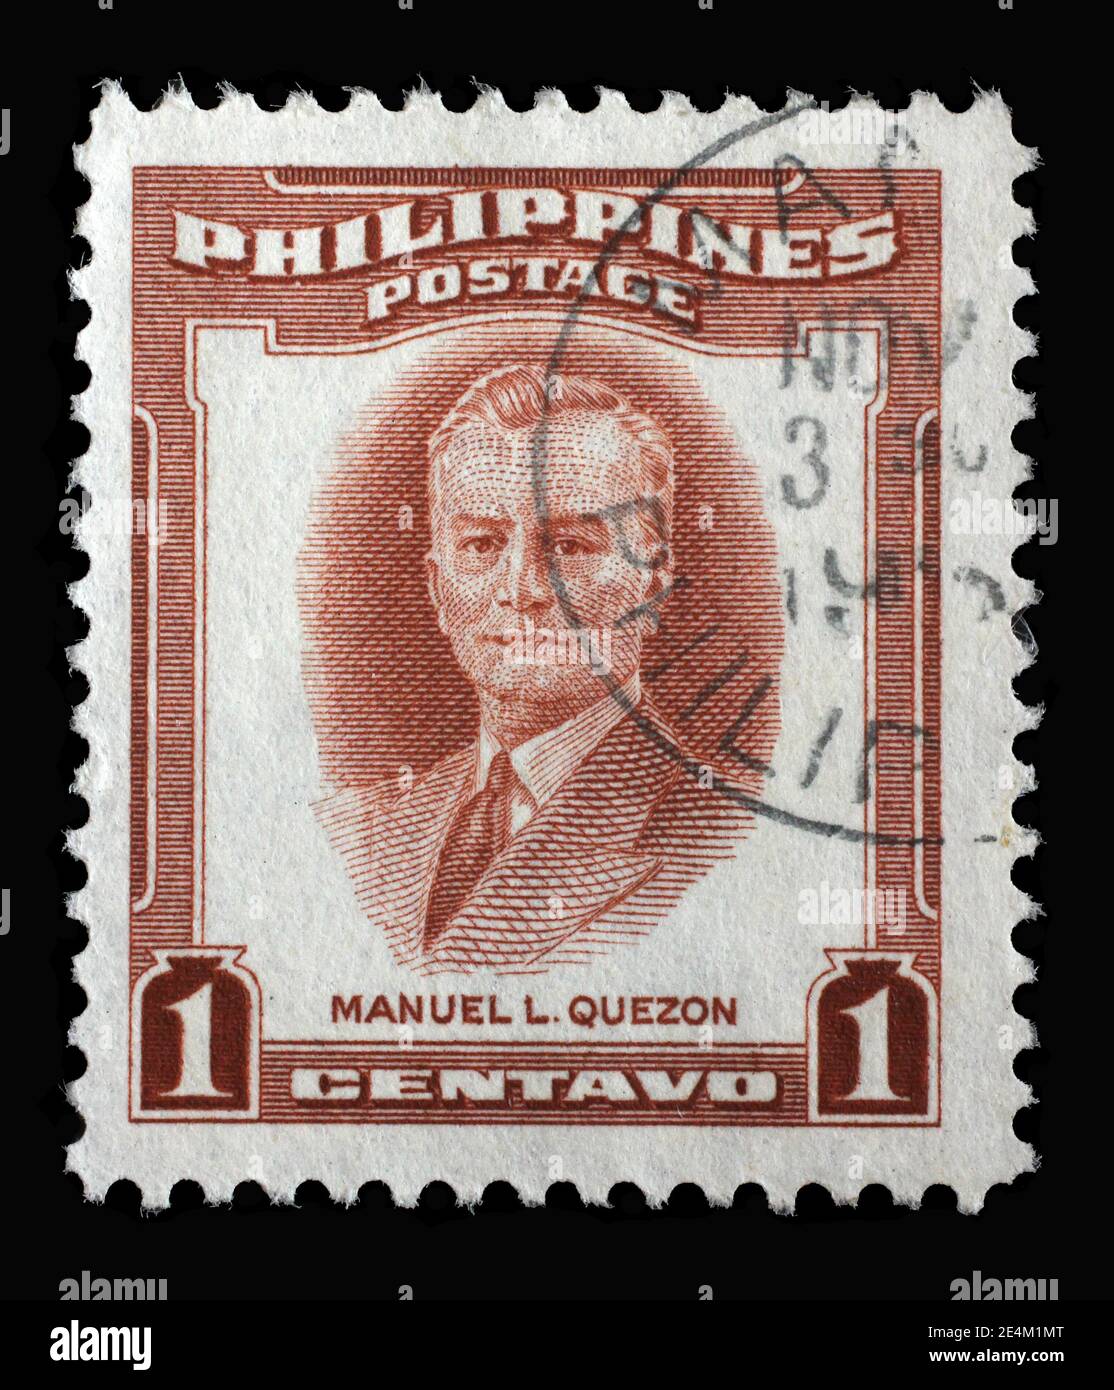 Briefmarke gedruckt auf den Philippinen zeigt Porträt von Manuel Luis Quezon - diente als Präsident des Commonwealth der Philippinen, um 1953 Stockfoto